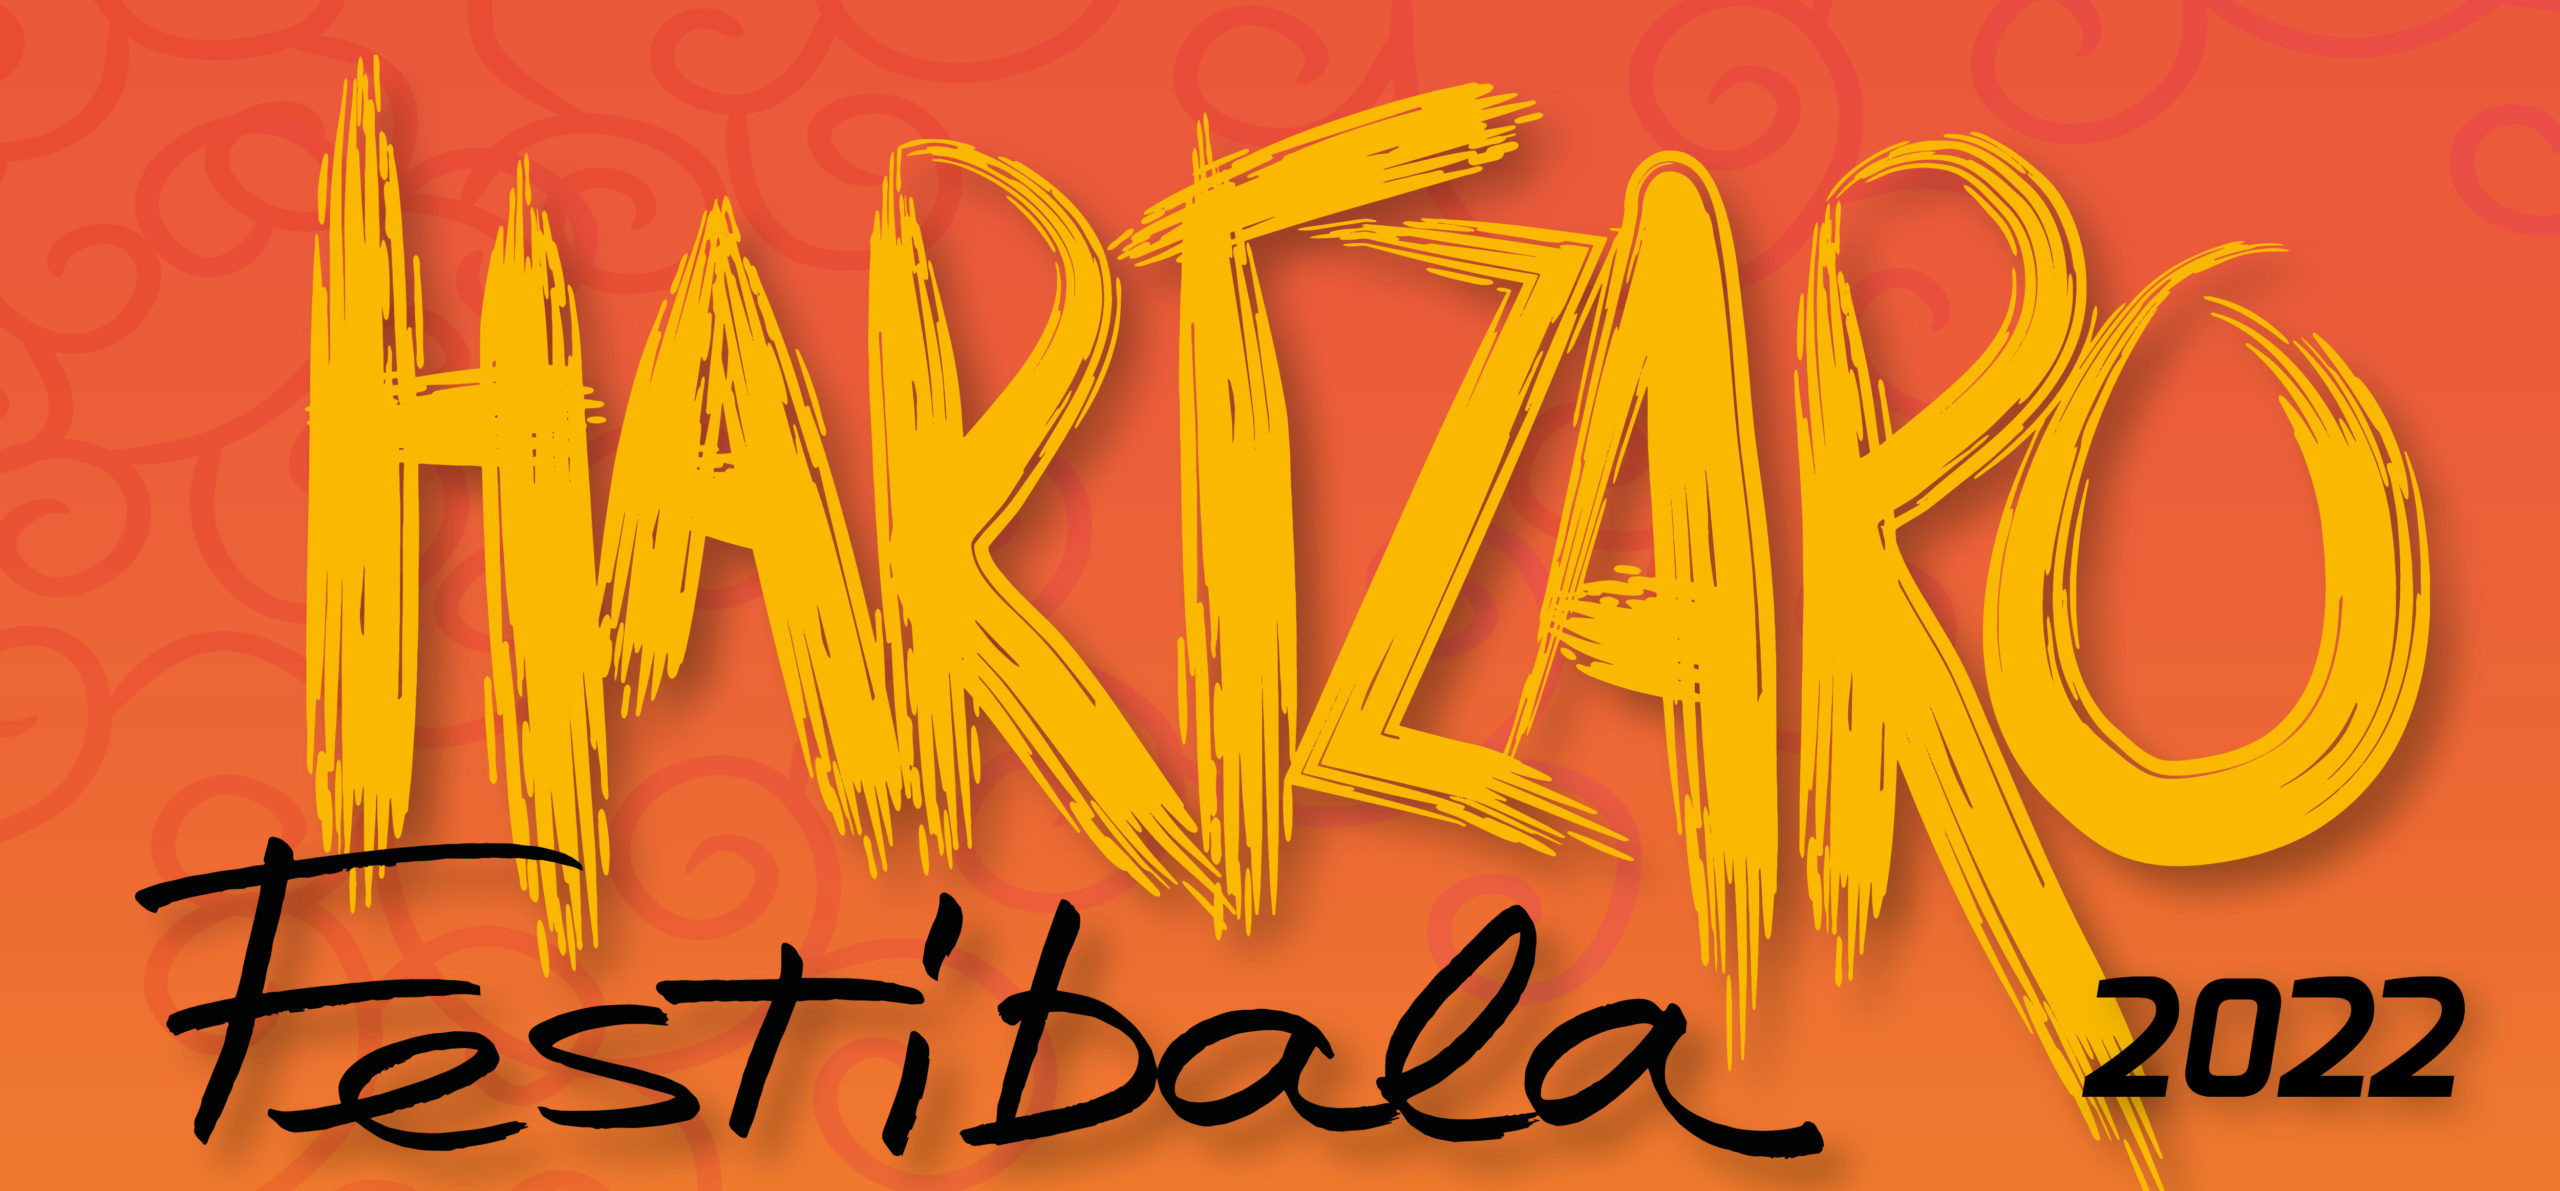 Lire la suite à propos de l’article Festival Hartzaro 2022